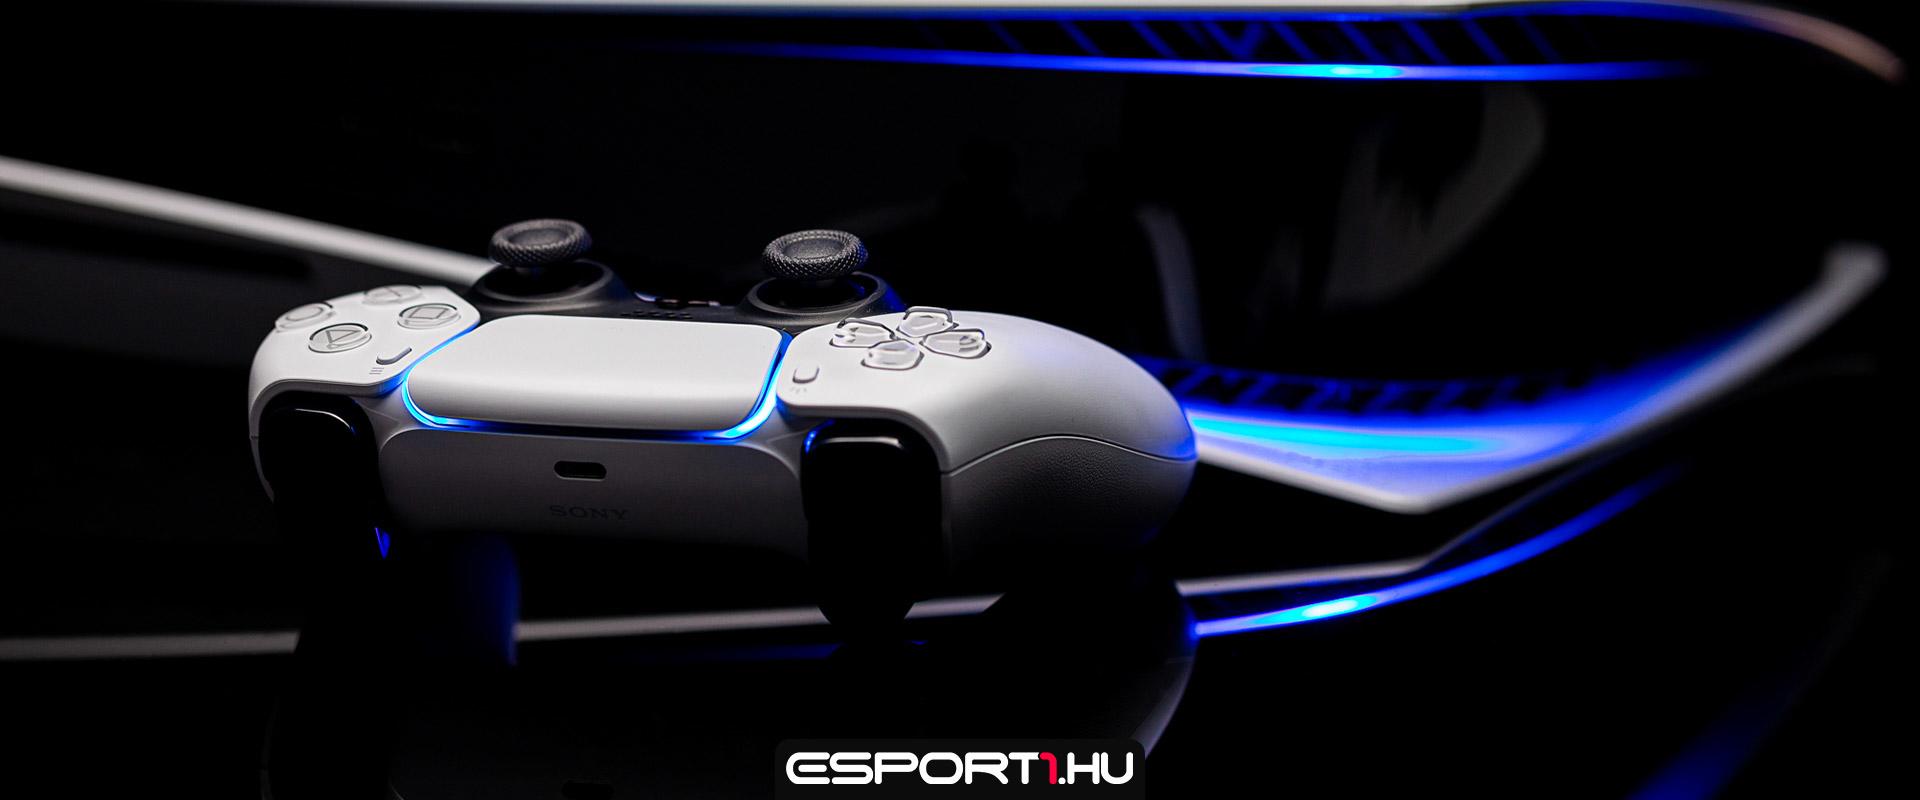 Hardver: Különleges kiegészítőt kaphat az új PlayStation 5 konzol